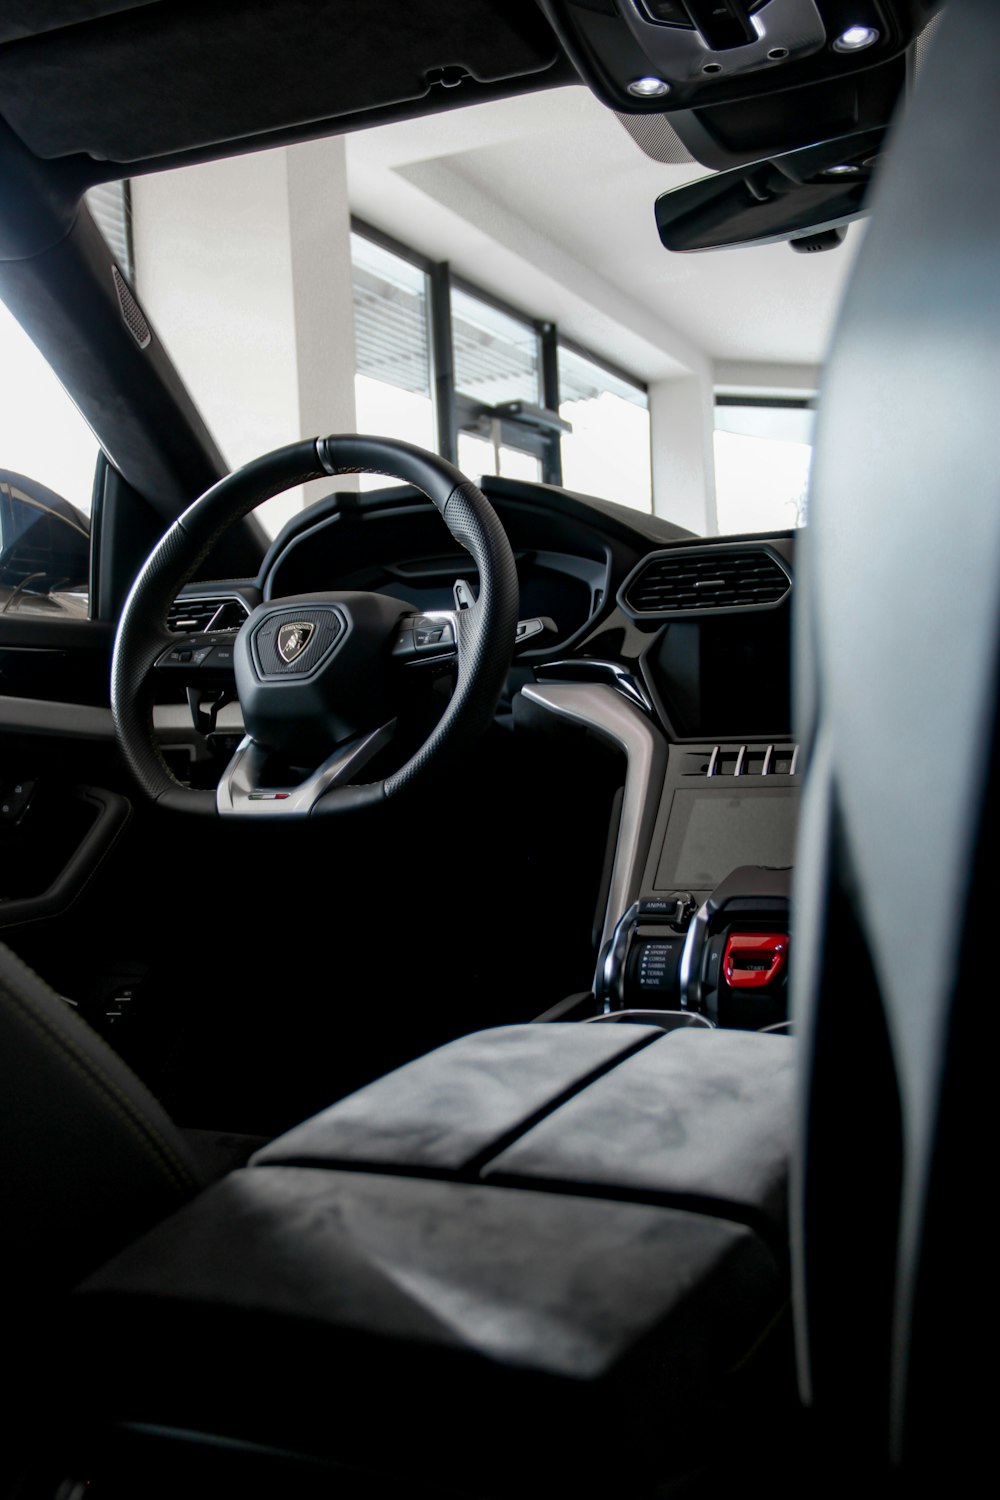 Lamborghini Urus Interior Pictures Download Free Images On